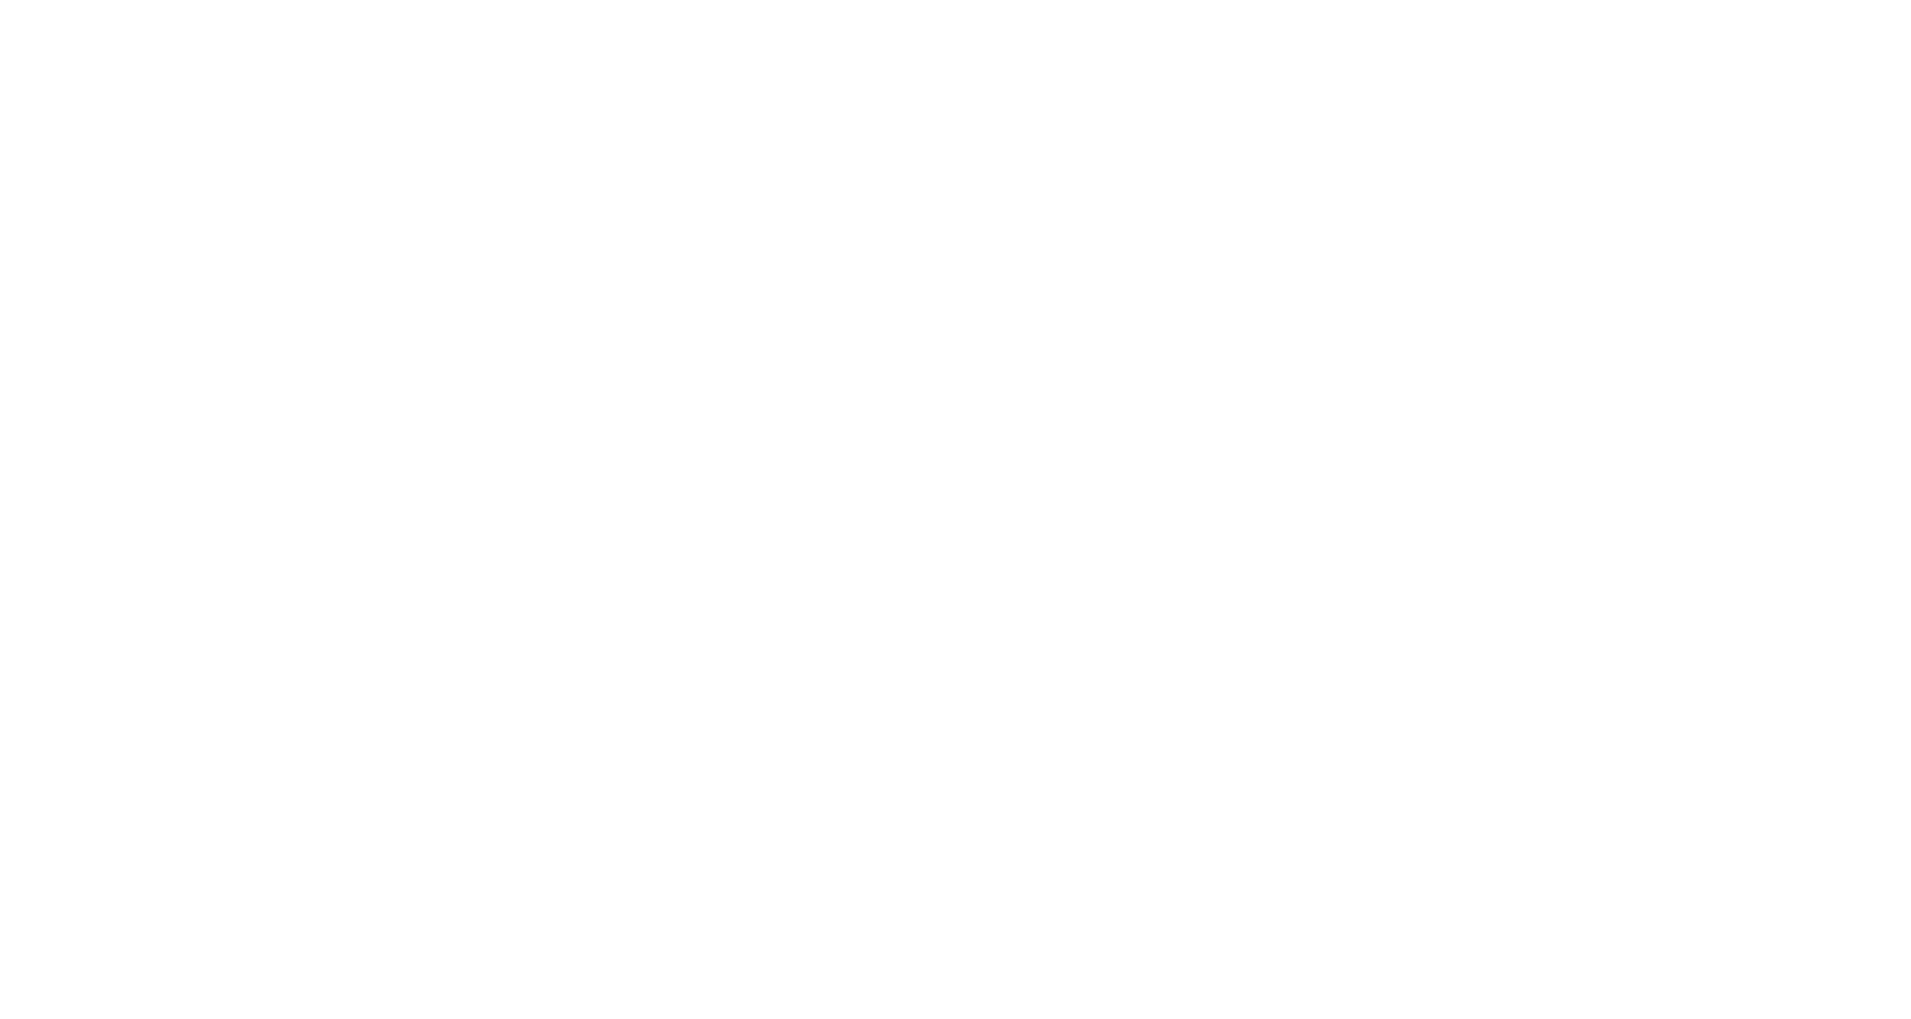 gc2b logo